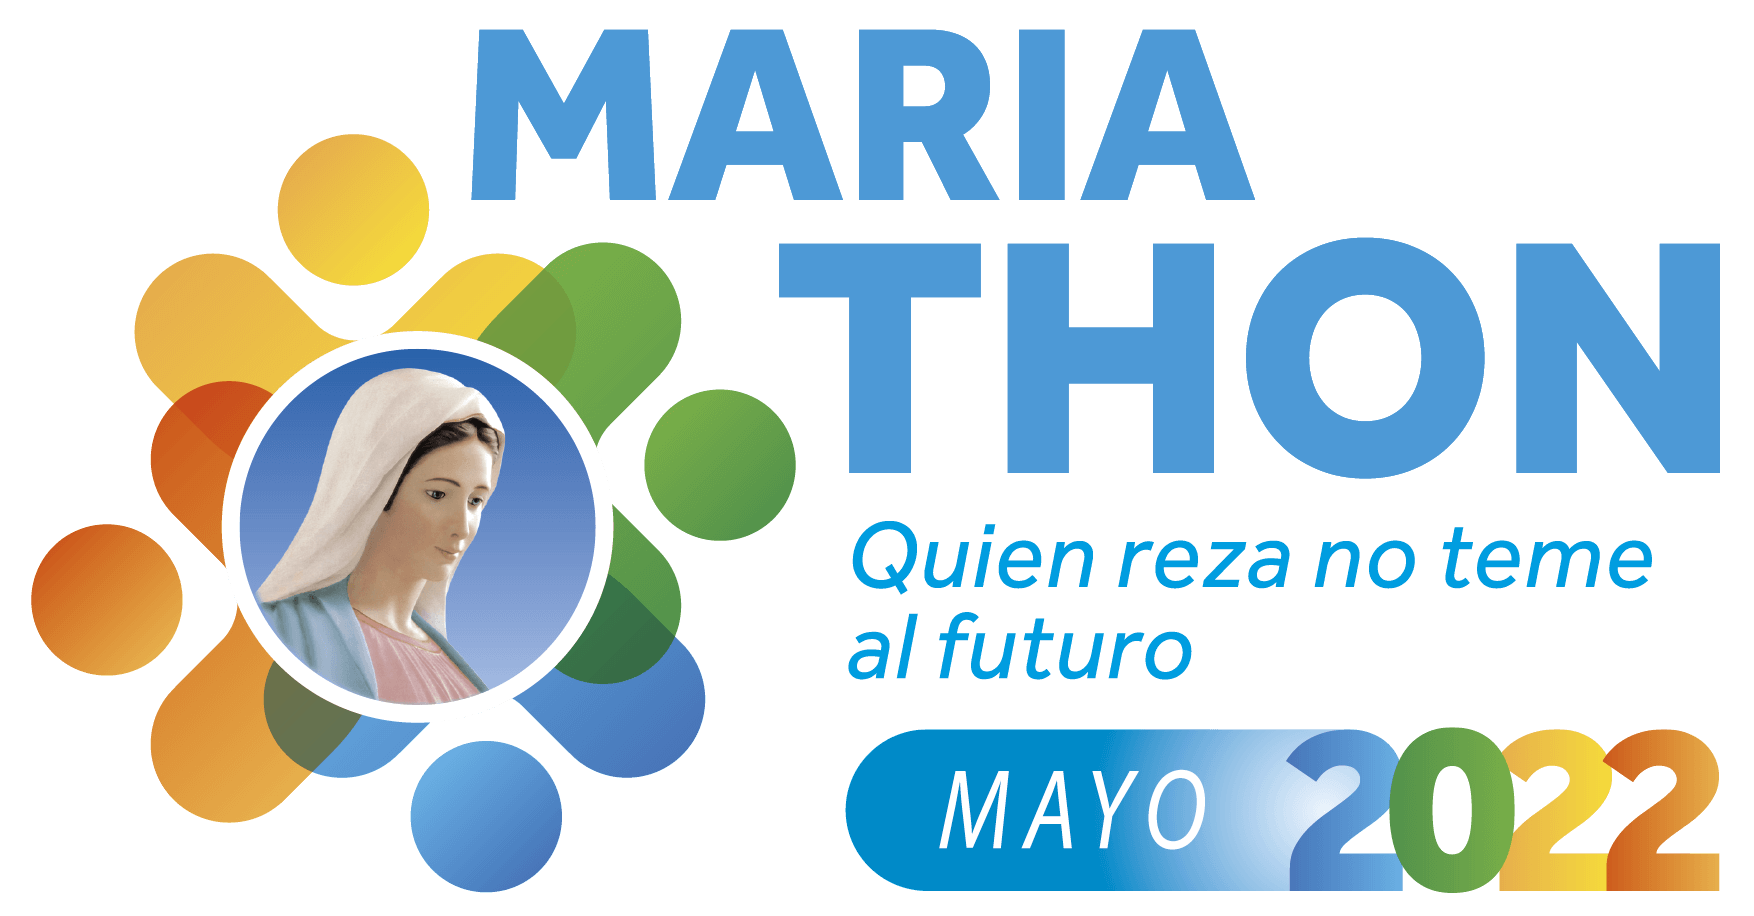 Mariathon 2022